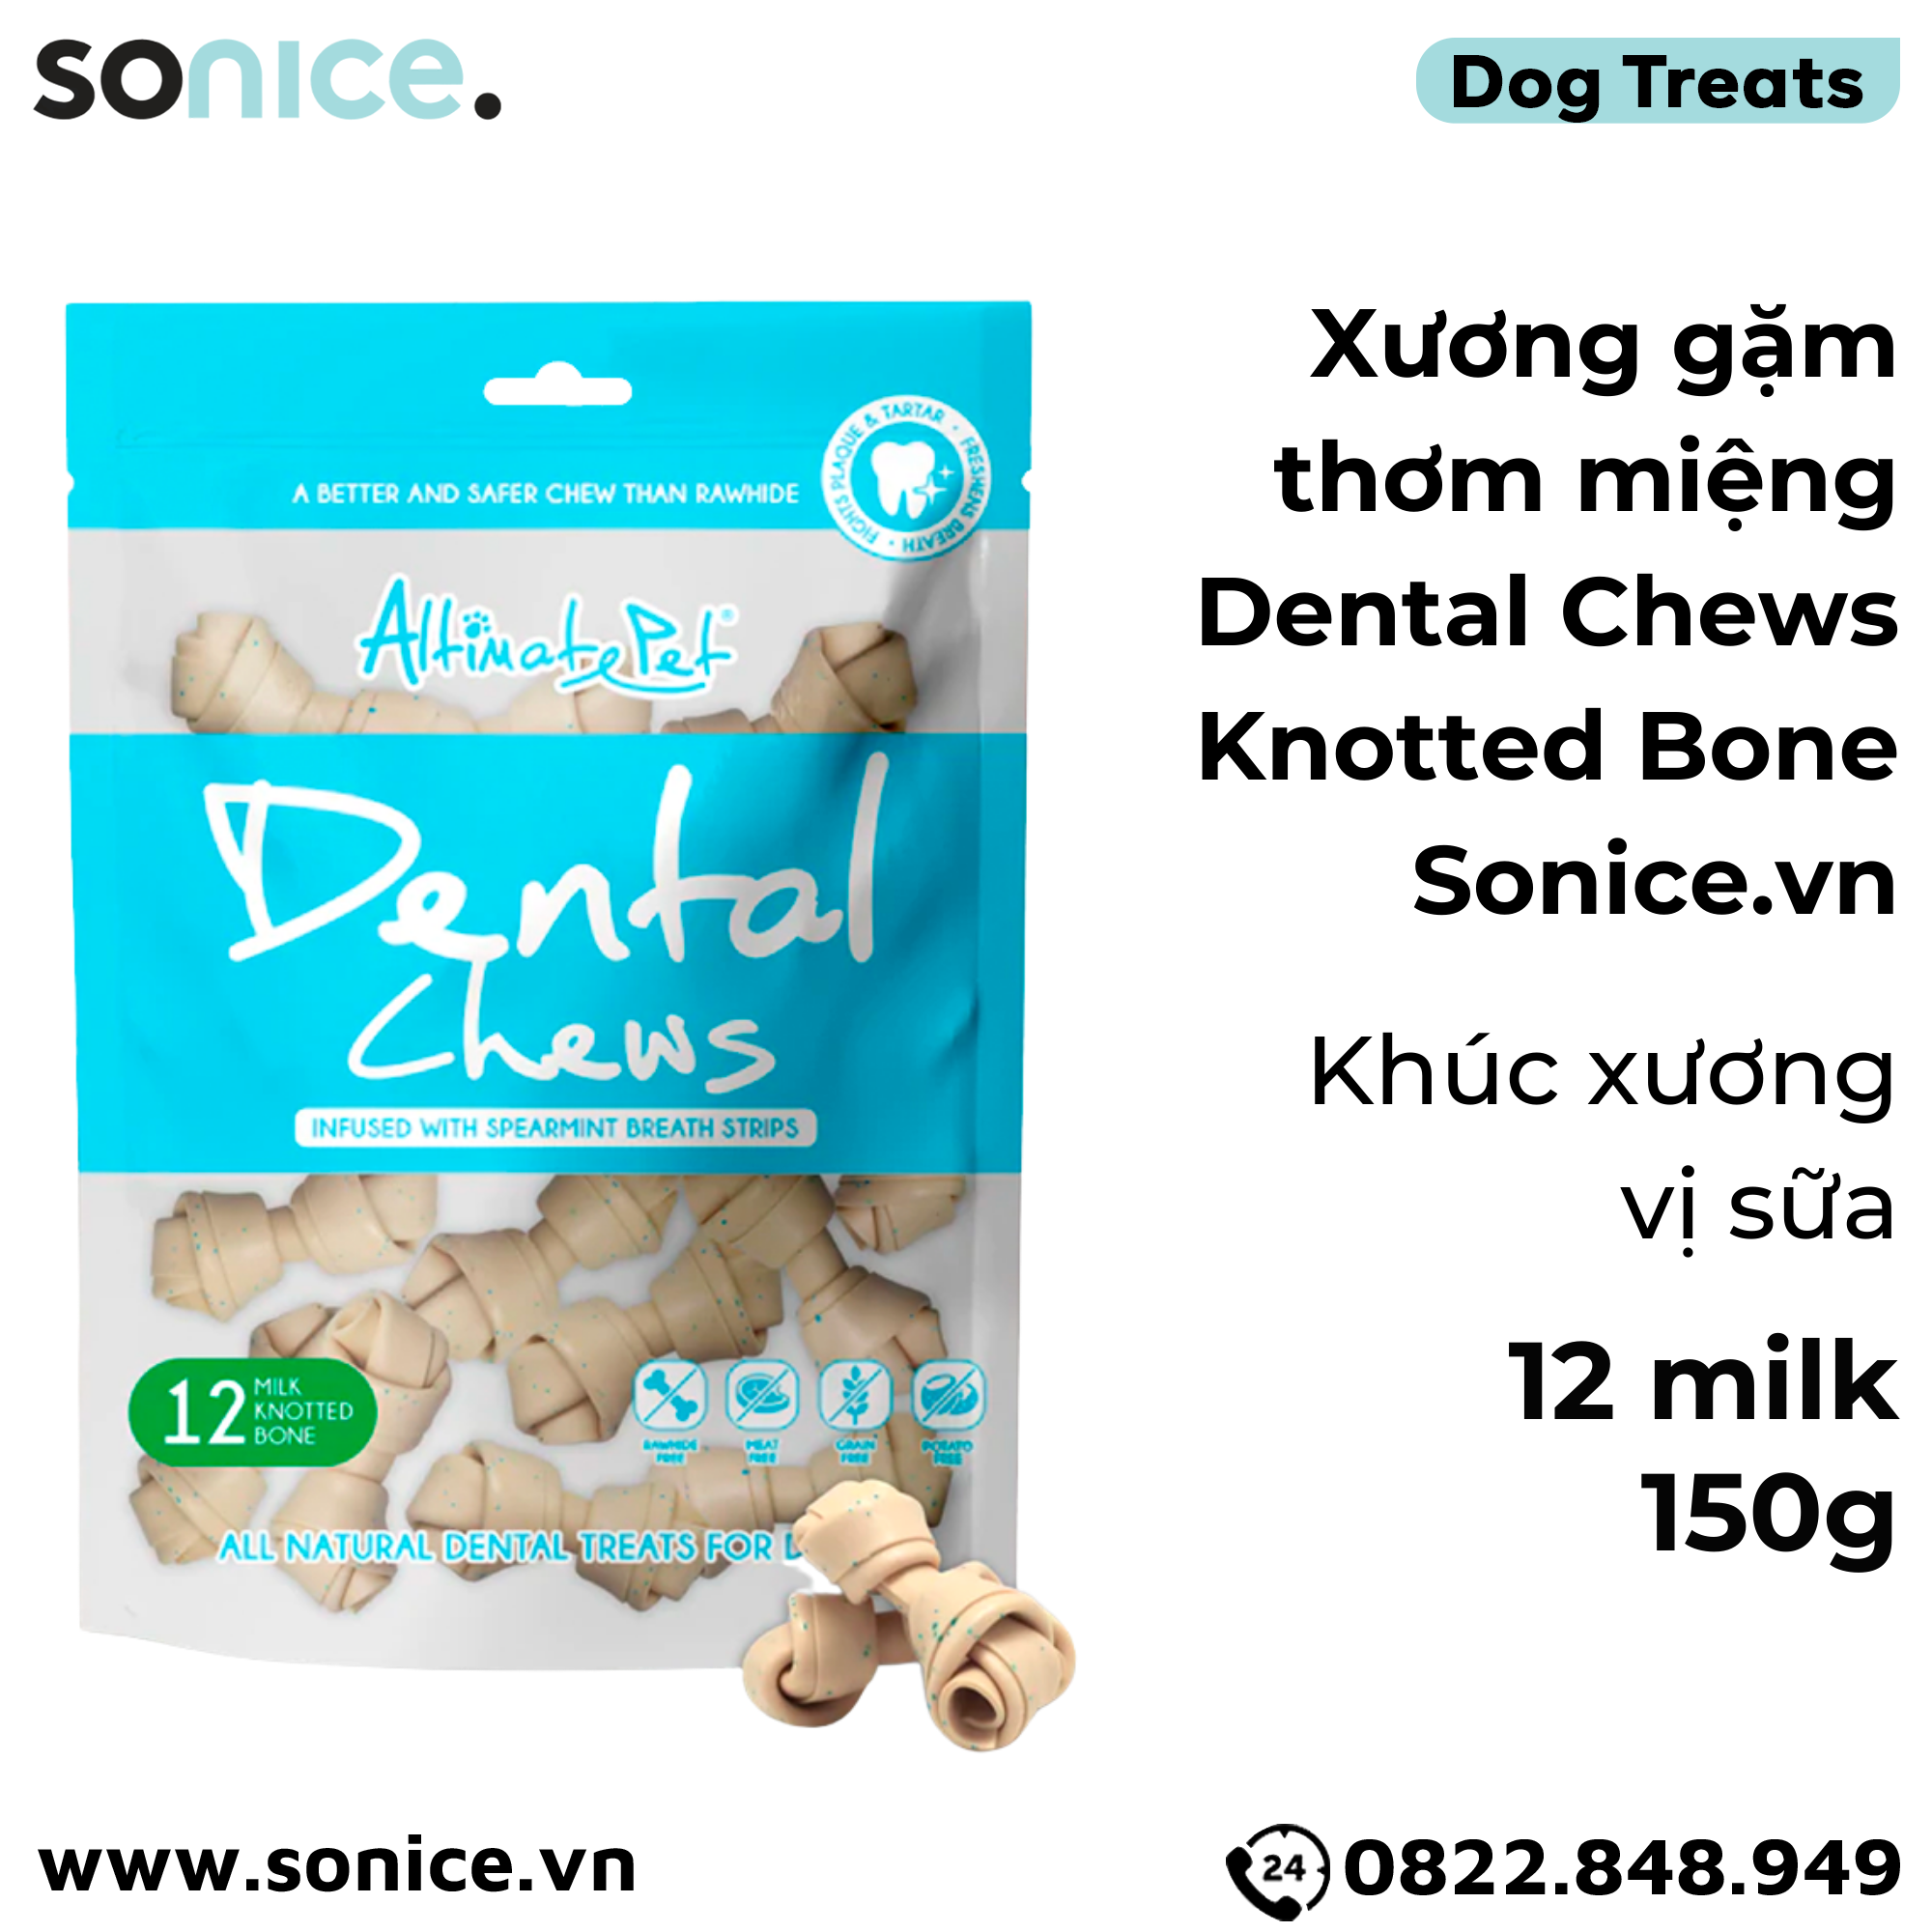  Xương gặm thơm miệng Dental Chews Knotted Bone 150g - 12 milk - Khúc xương vị sữa SONICE. 